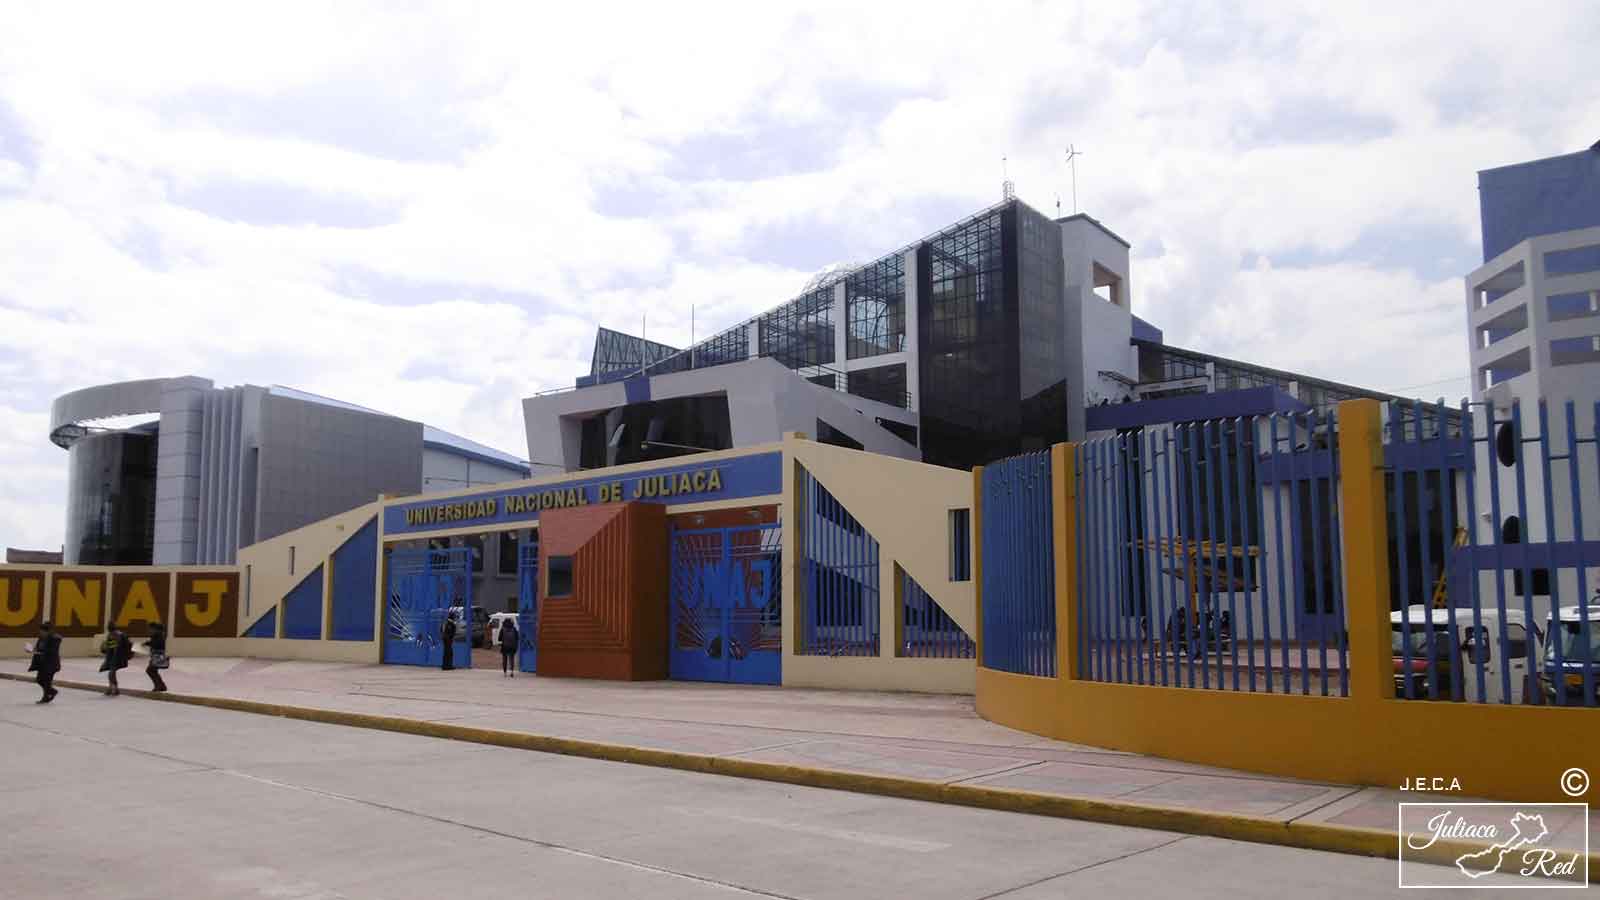 Edificios de la universidad nacional de Juliaca